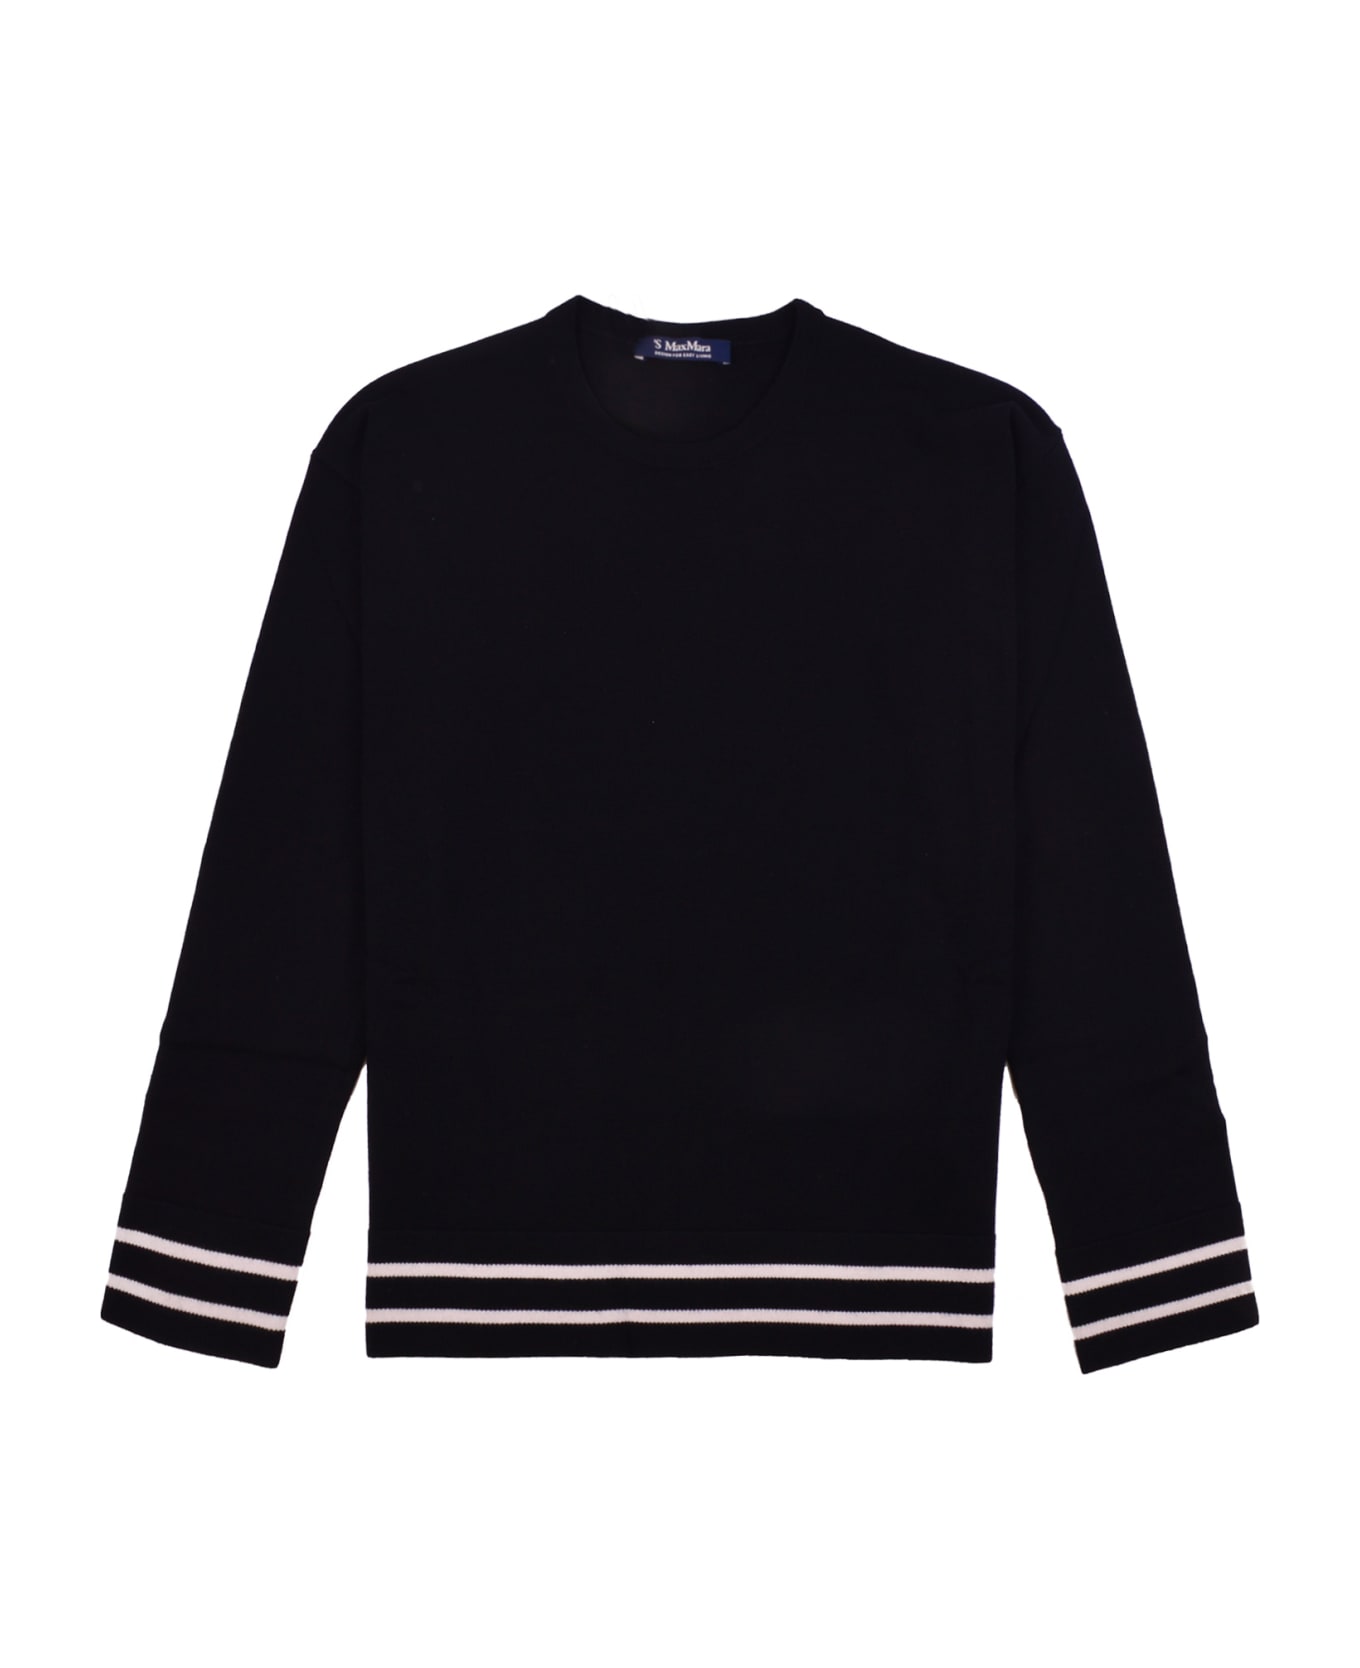 'S Max Mara West Sweater - Black フリース